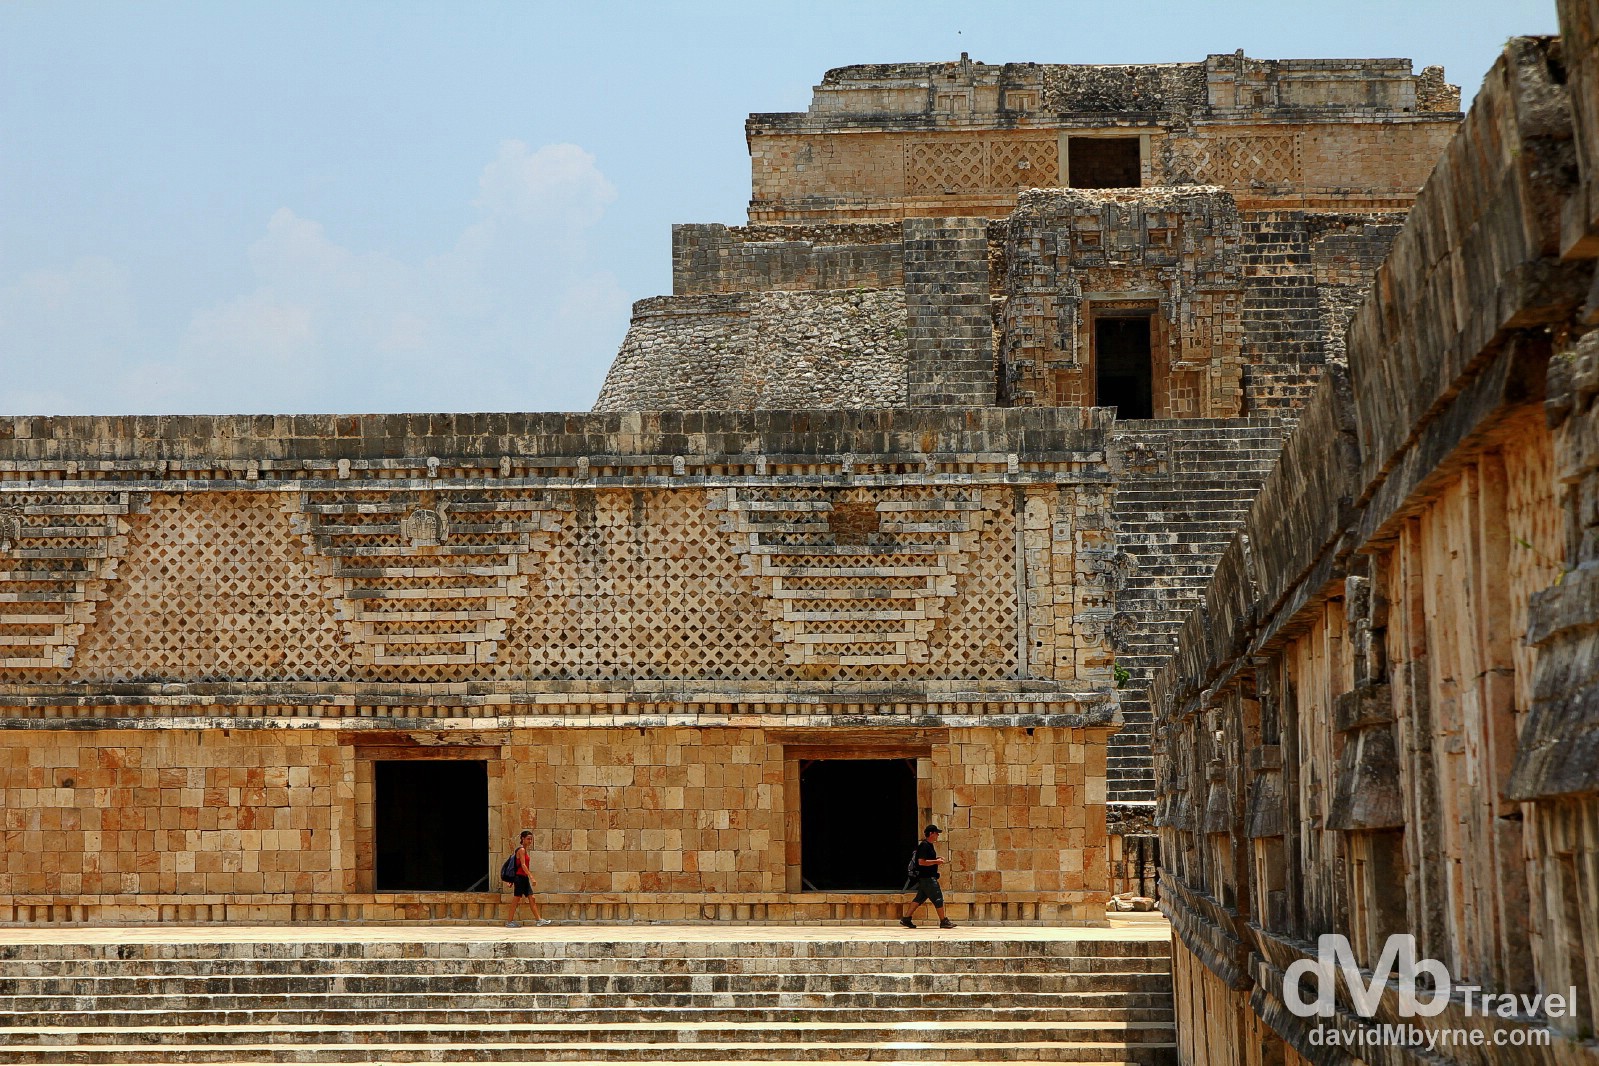 Uxmal Mayan ruins, Yucatan Peninsula, Mexico. May 2nd 2013.